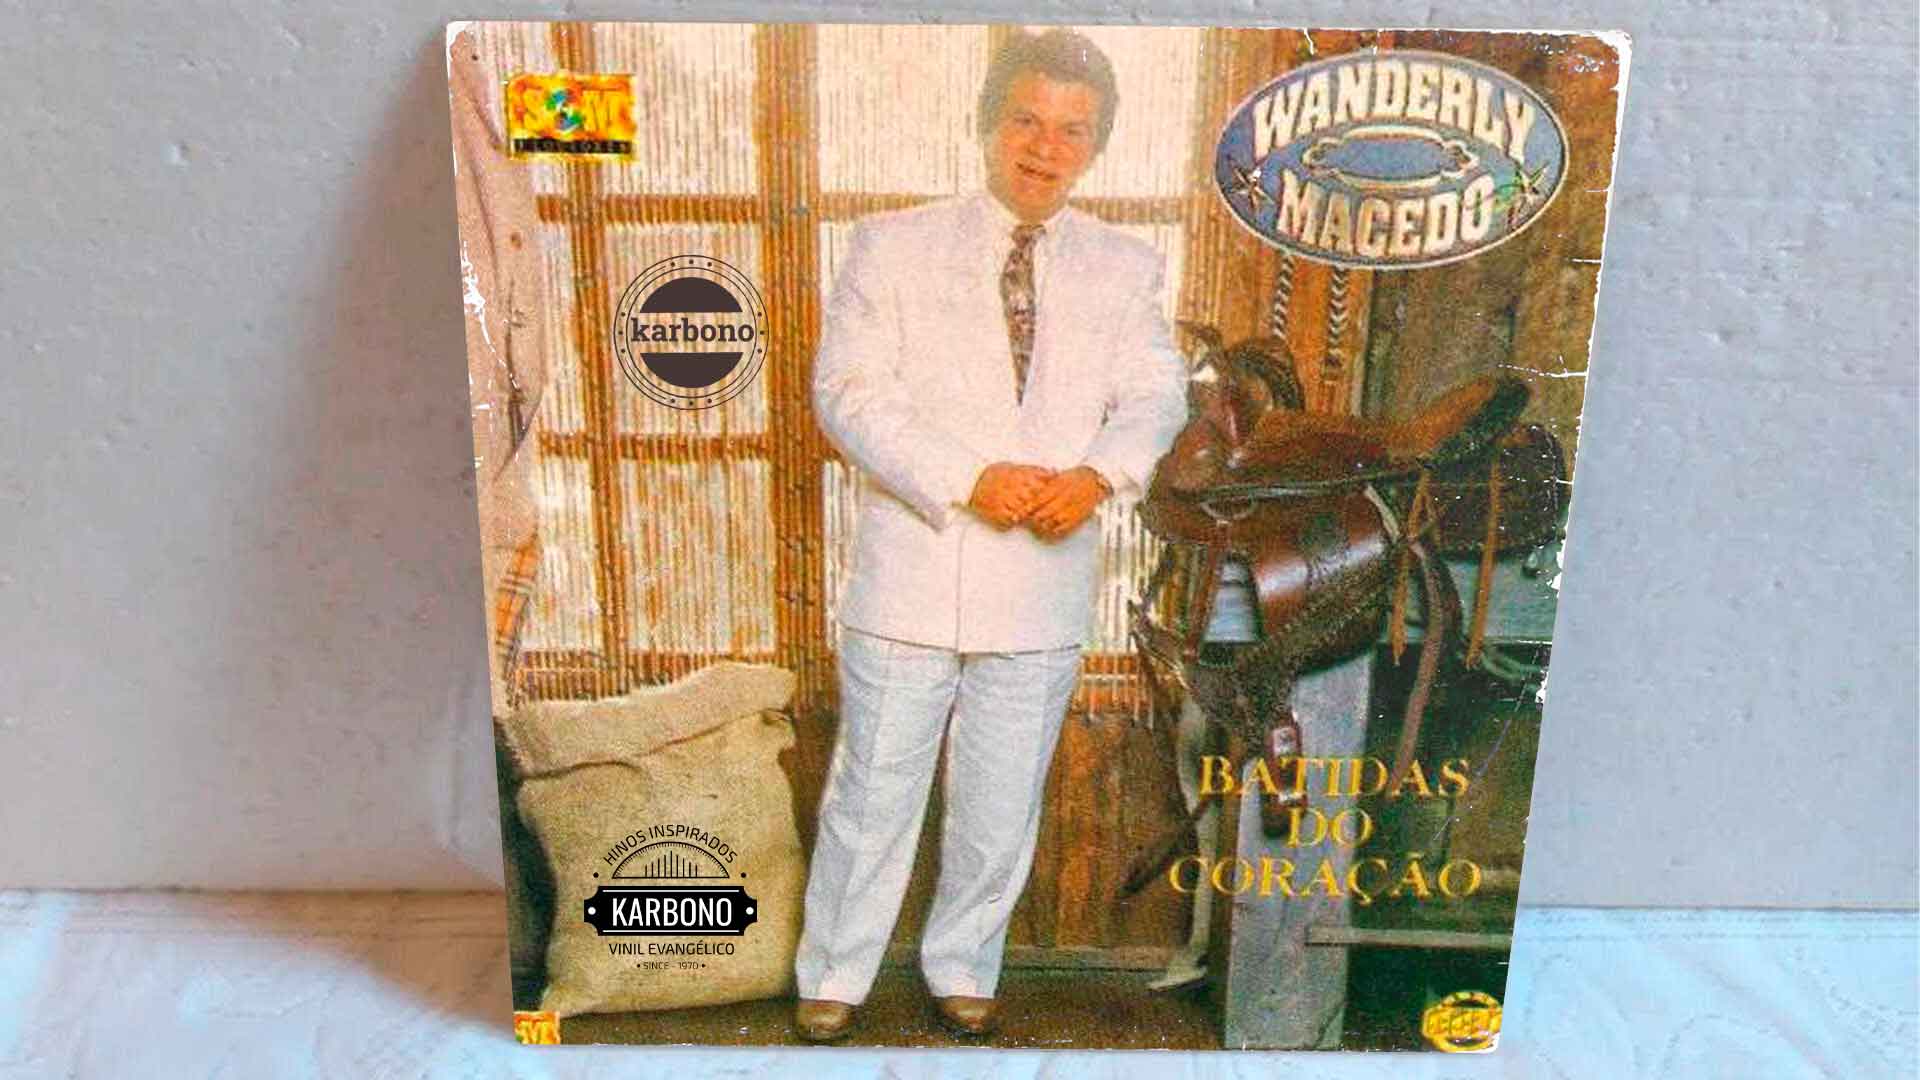 Wanderly Macedo - Batidas do Coração 1992